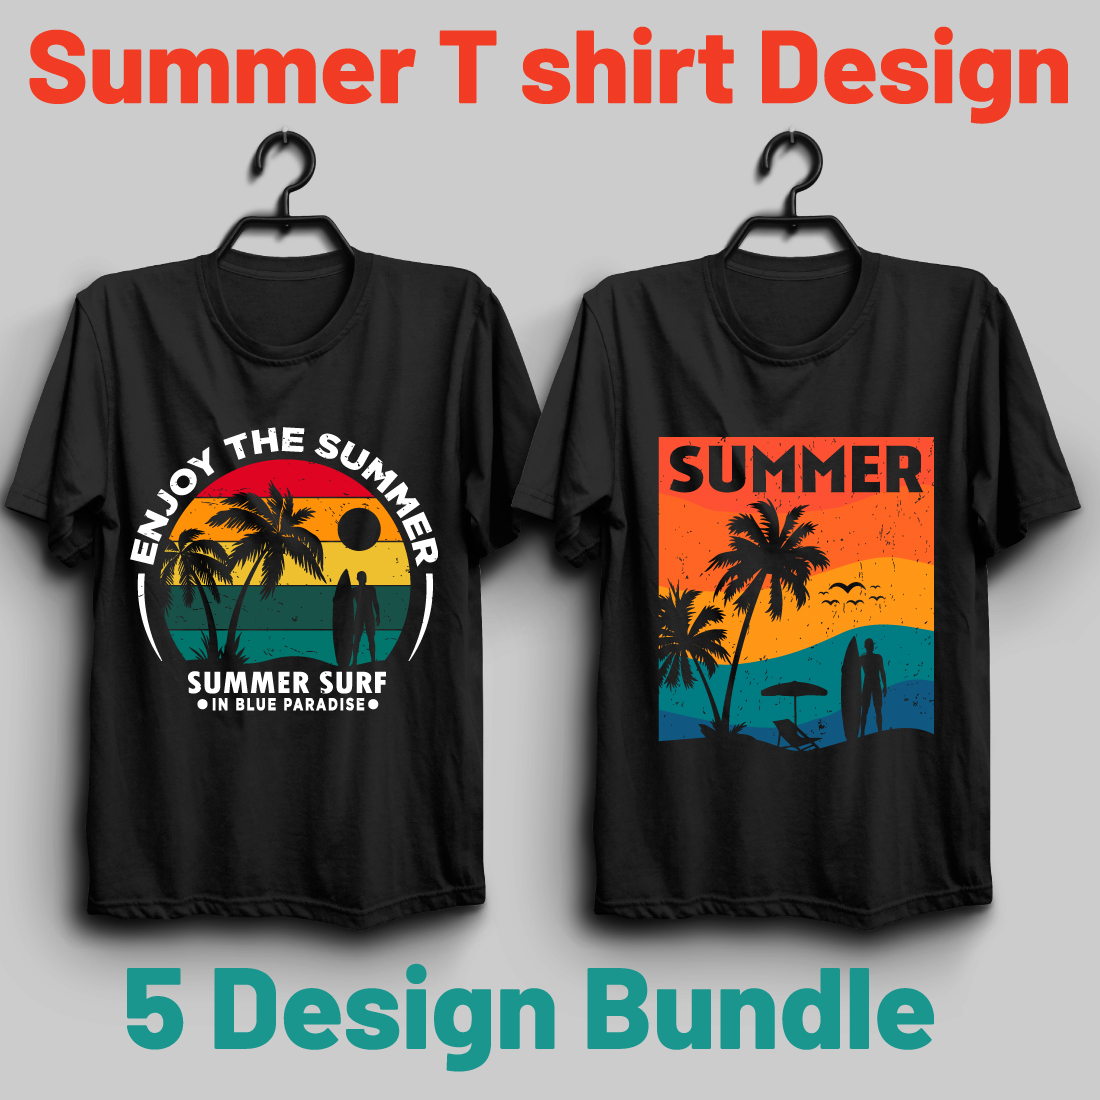 Summer T shirt Design Bundle cover image.